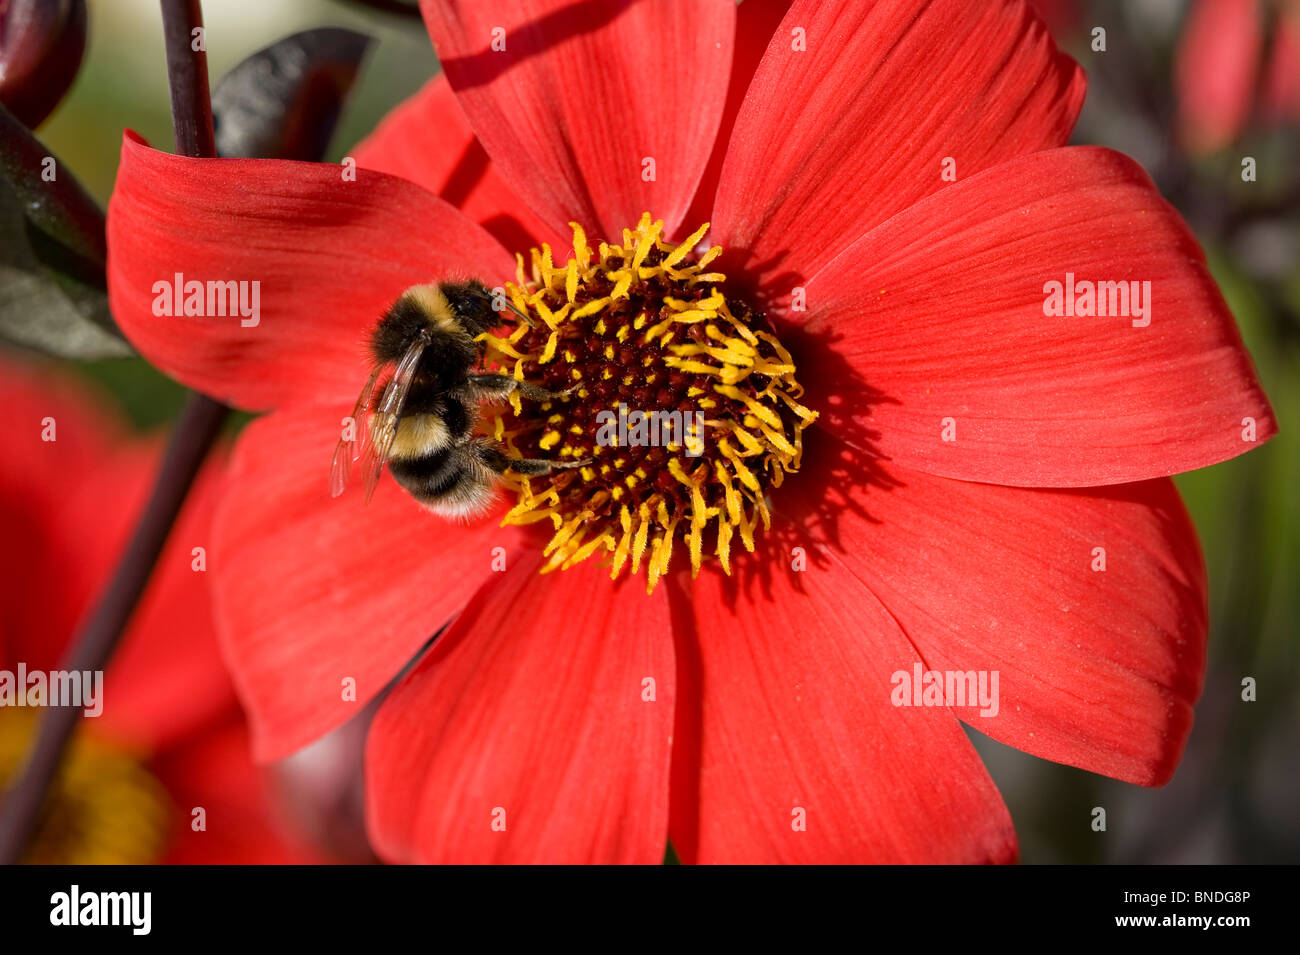 Bumble bee feeding on Dahlia Stock Photo